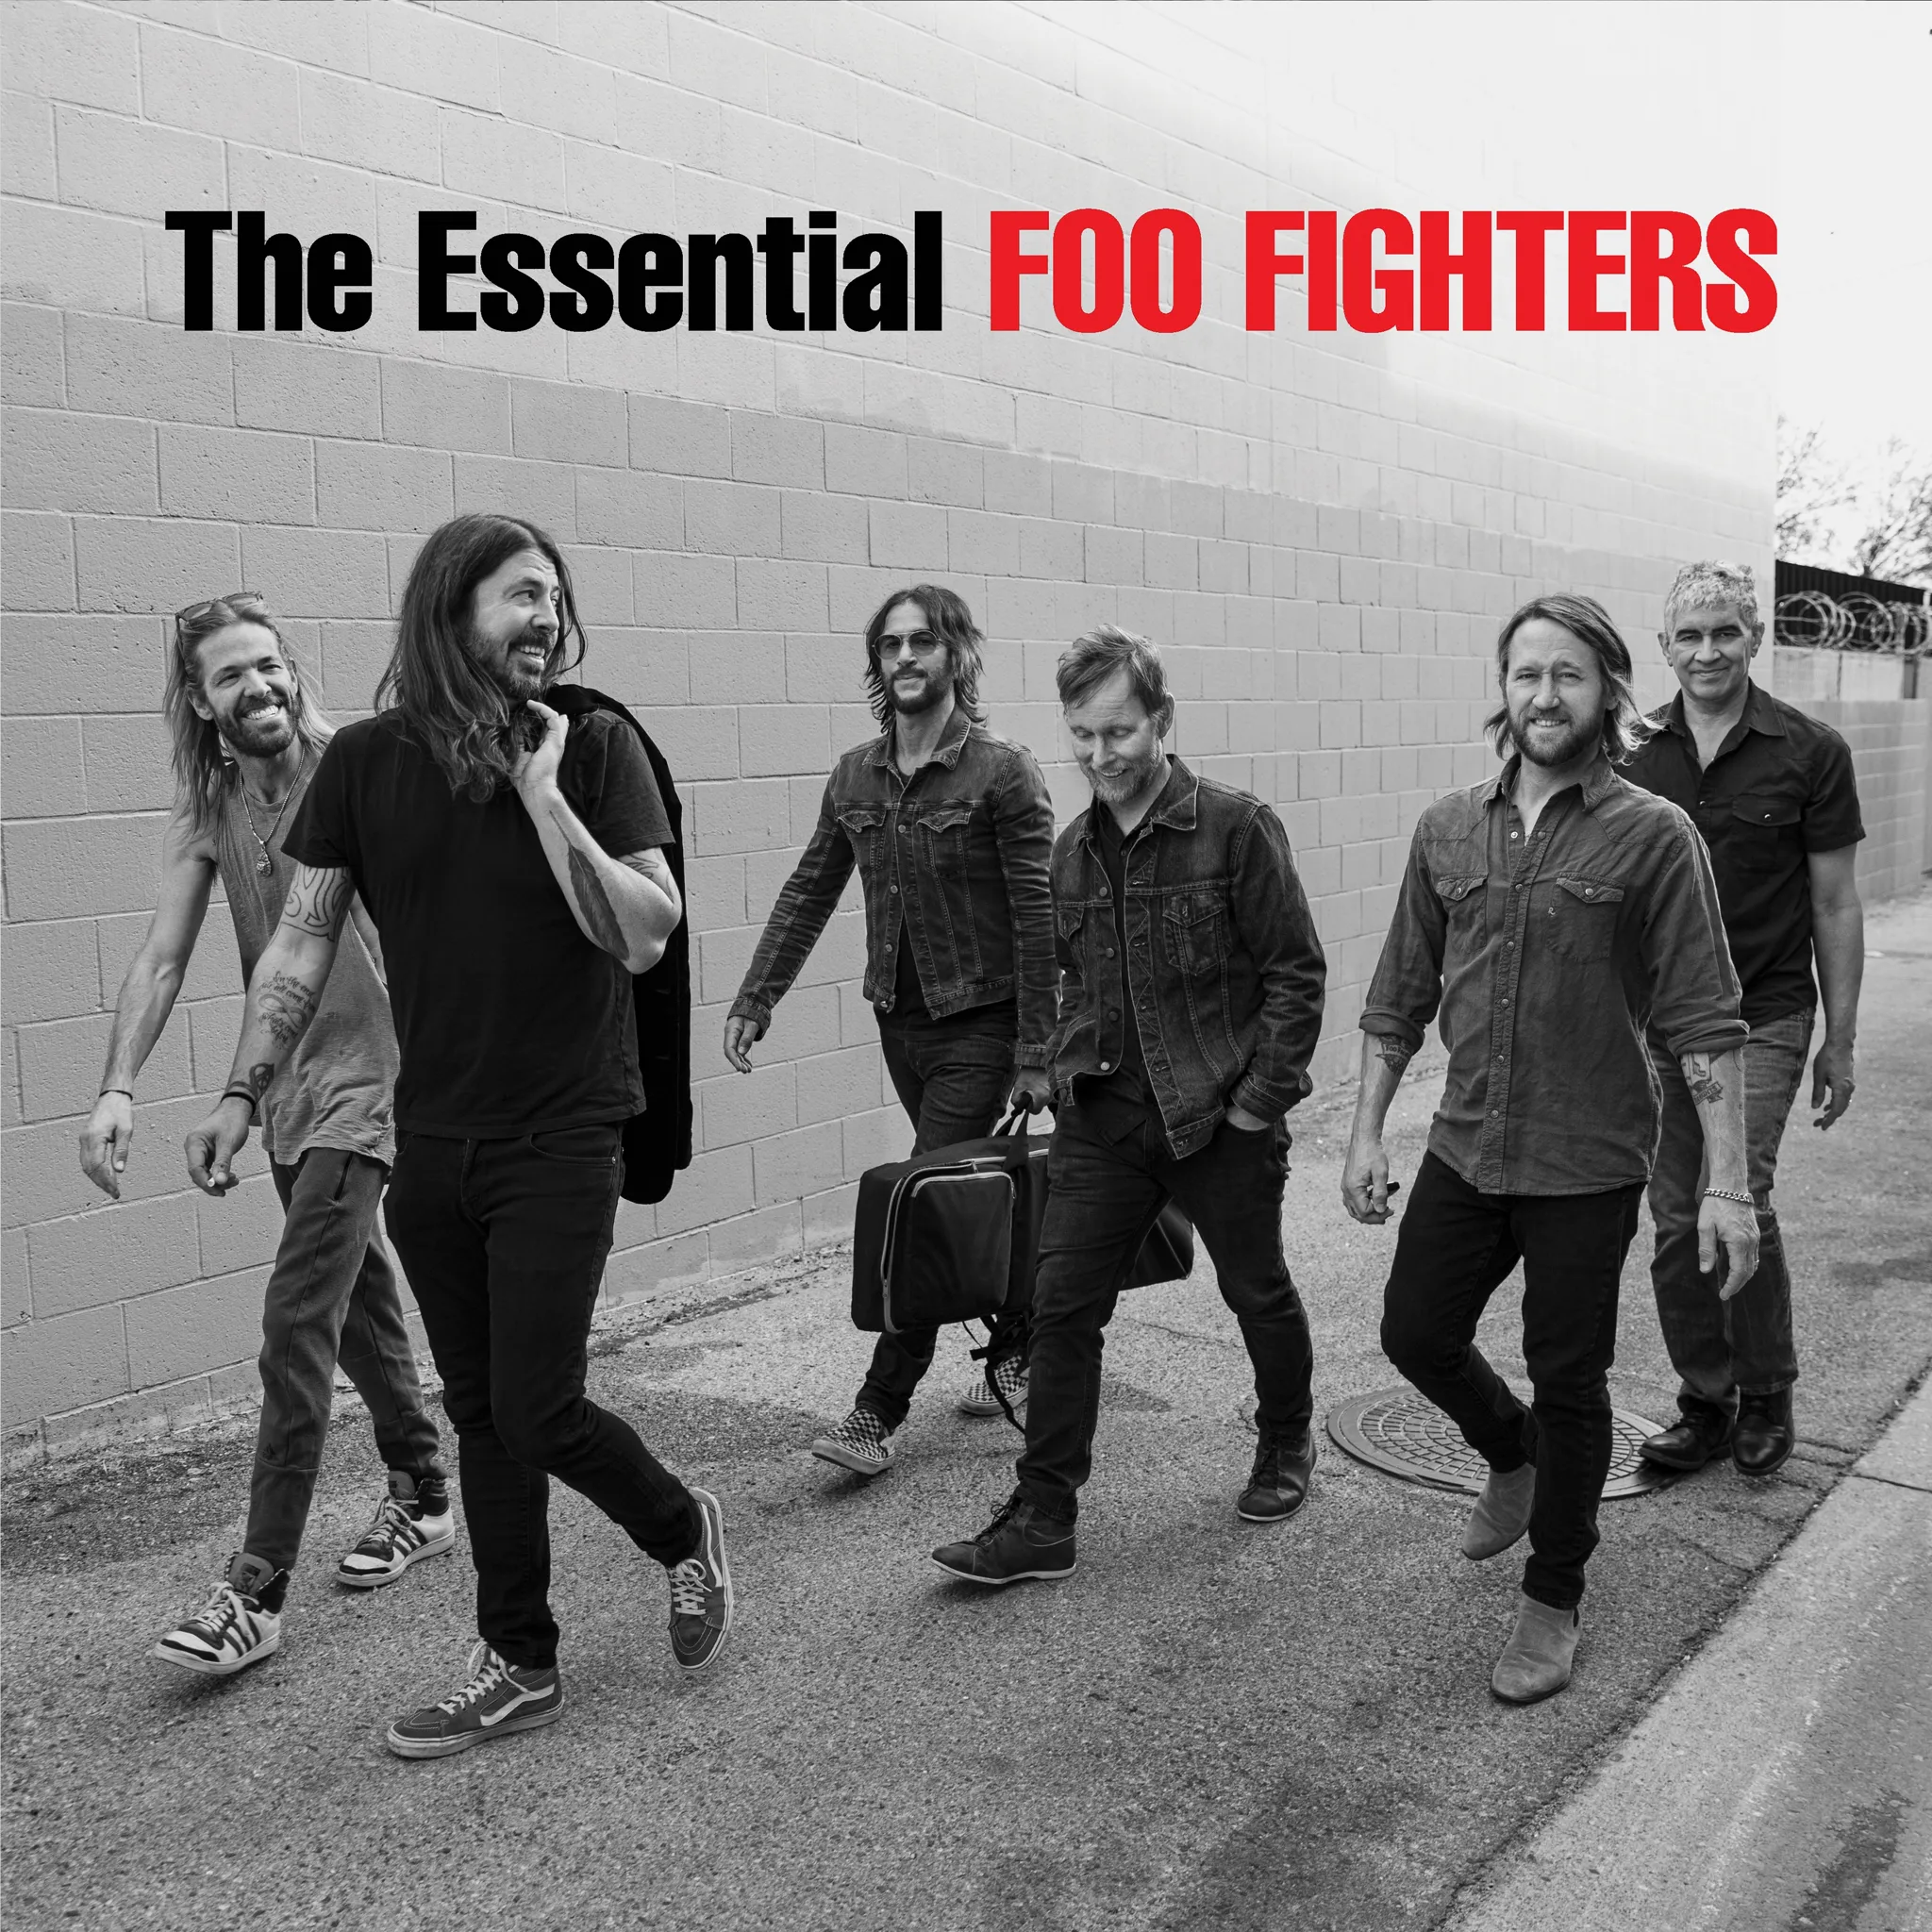 Foo Fighters - The Essential Foo Fighters artwork